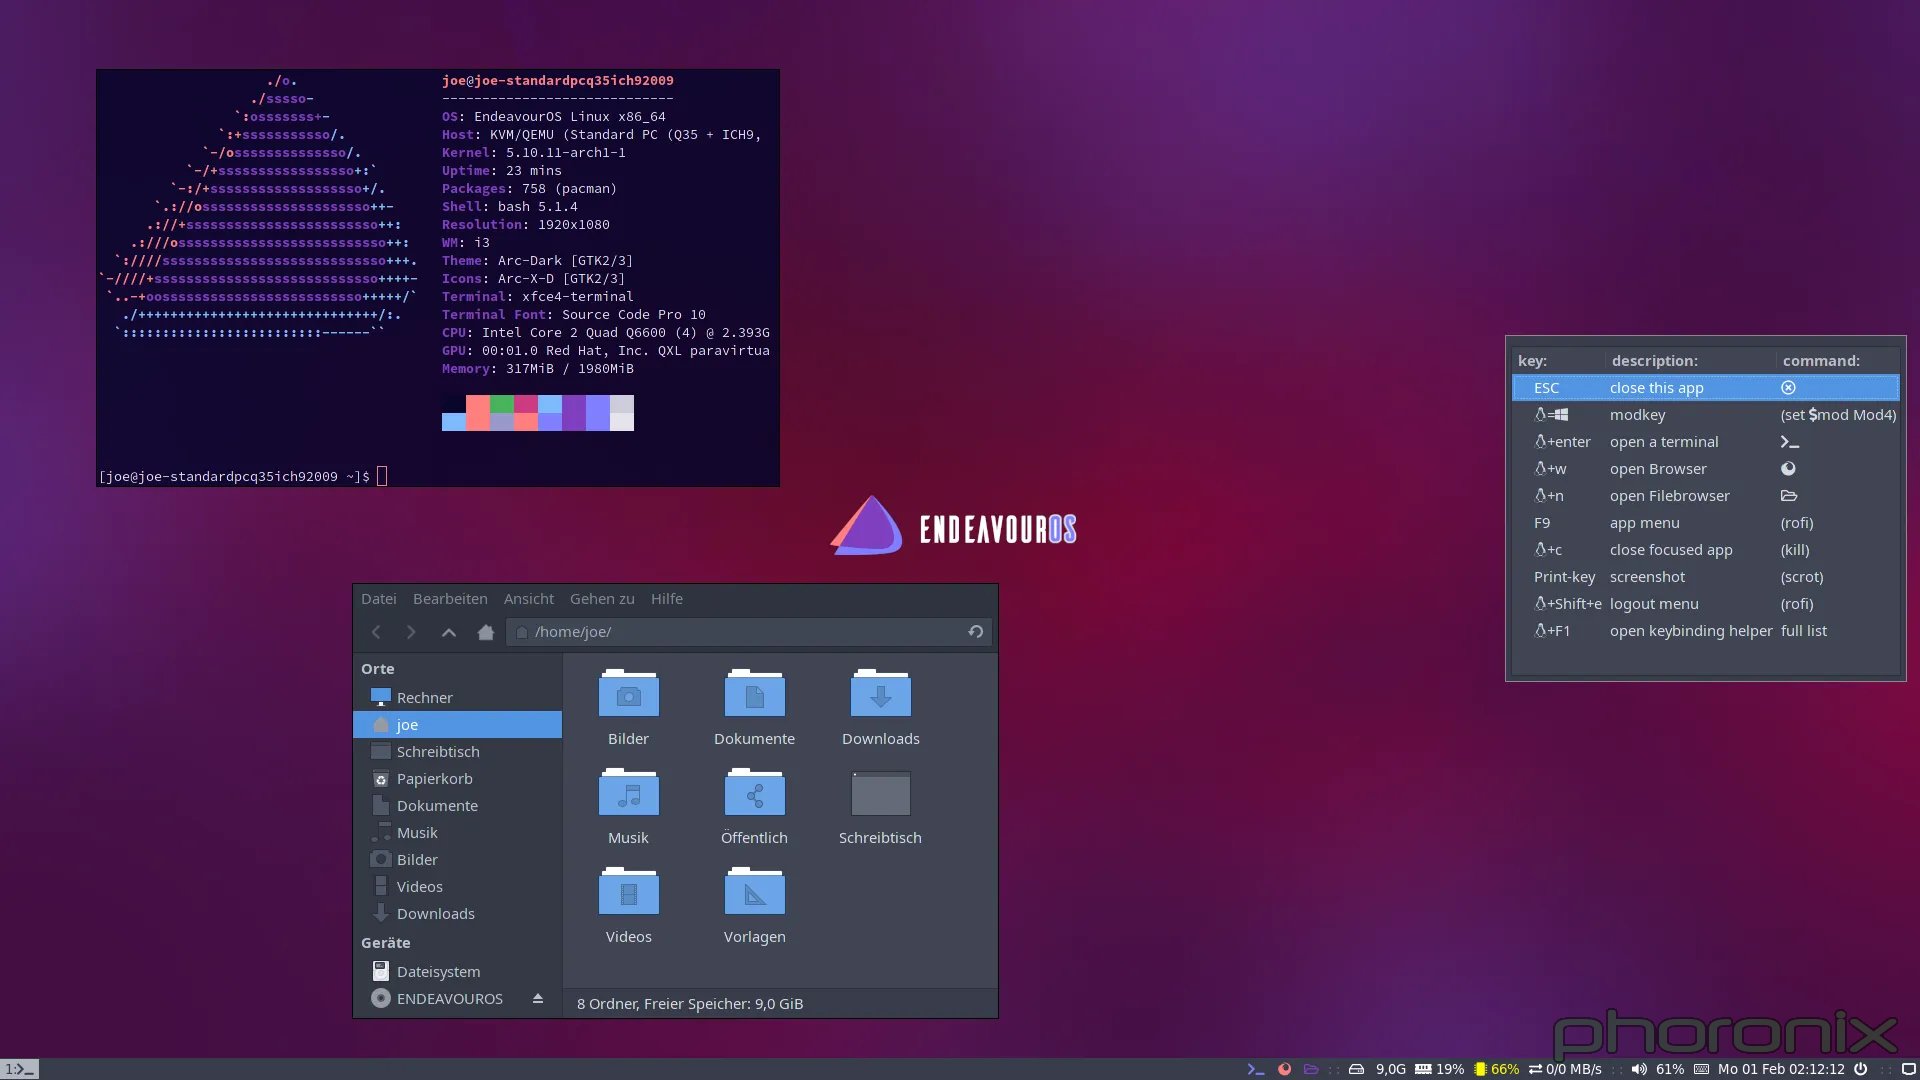 Endeavour Desktop!